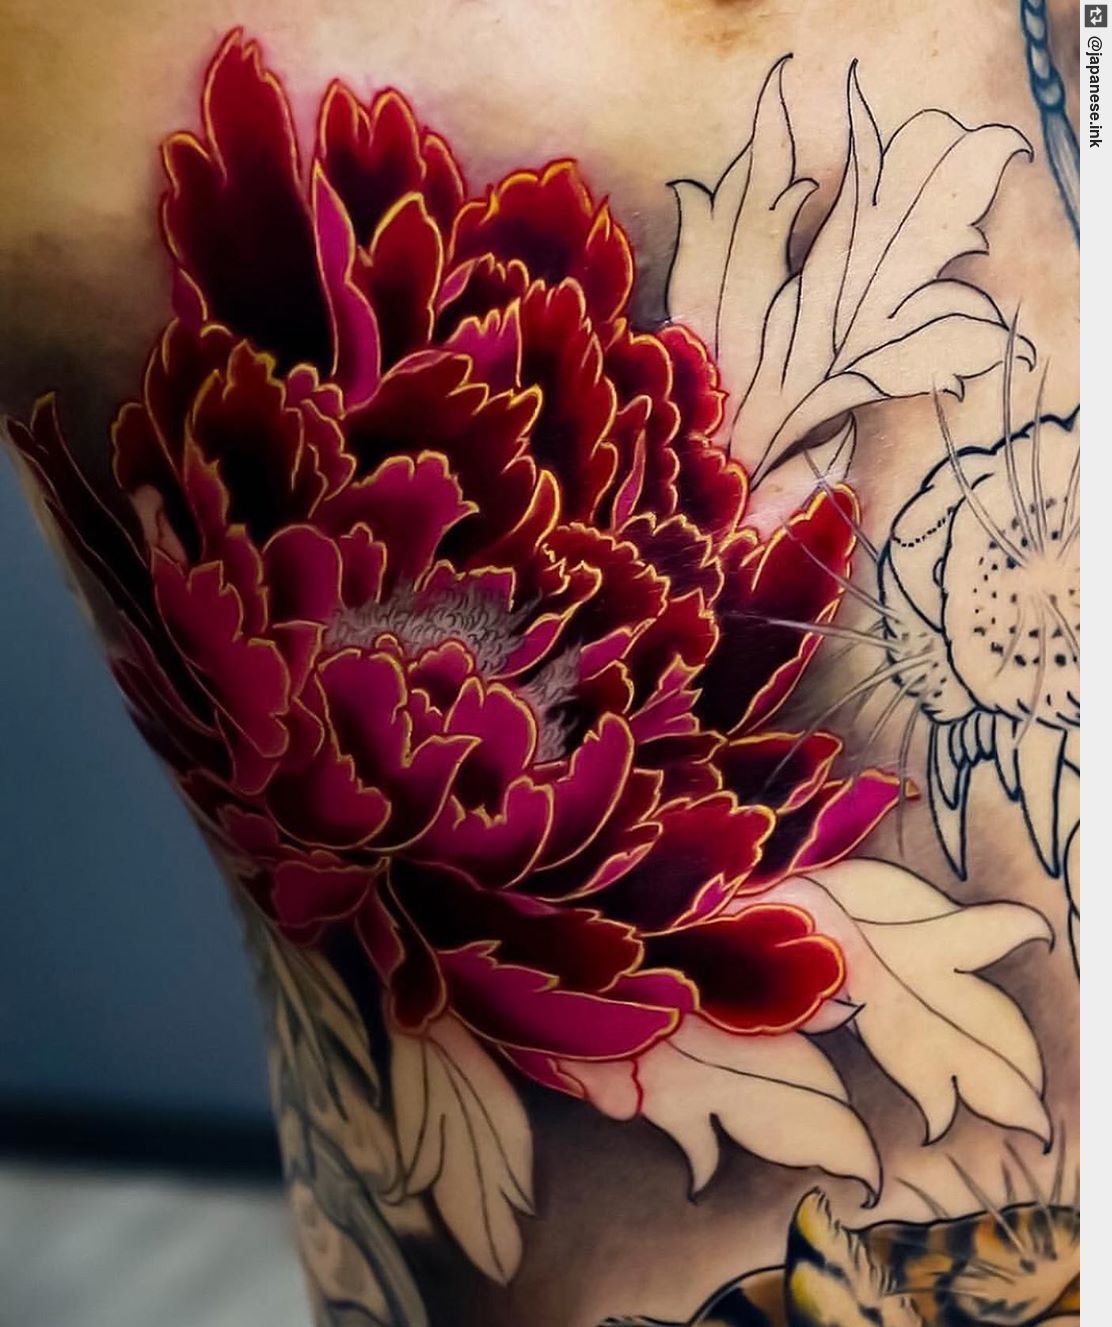 tattoo japanesetattoos traditionaltattoos tattooflower flowertattoos  peony  Half sleeve tattoos designs Sleeve tattoos Half sleeve tattoo